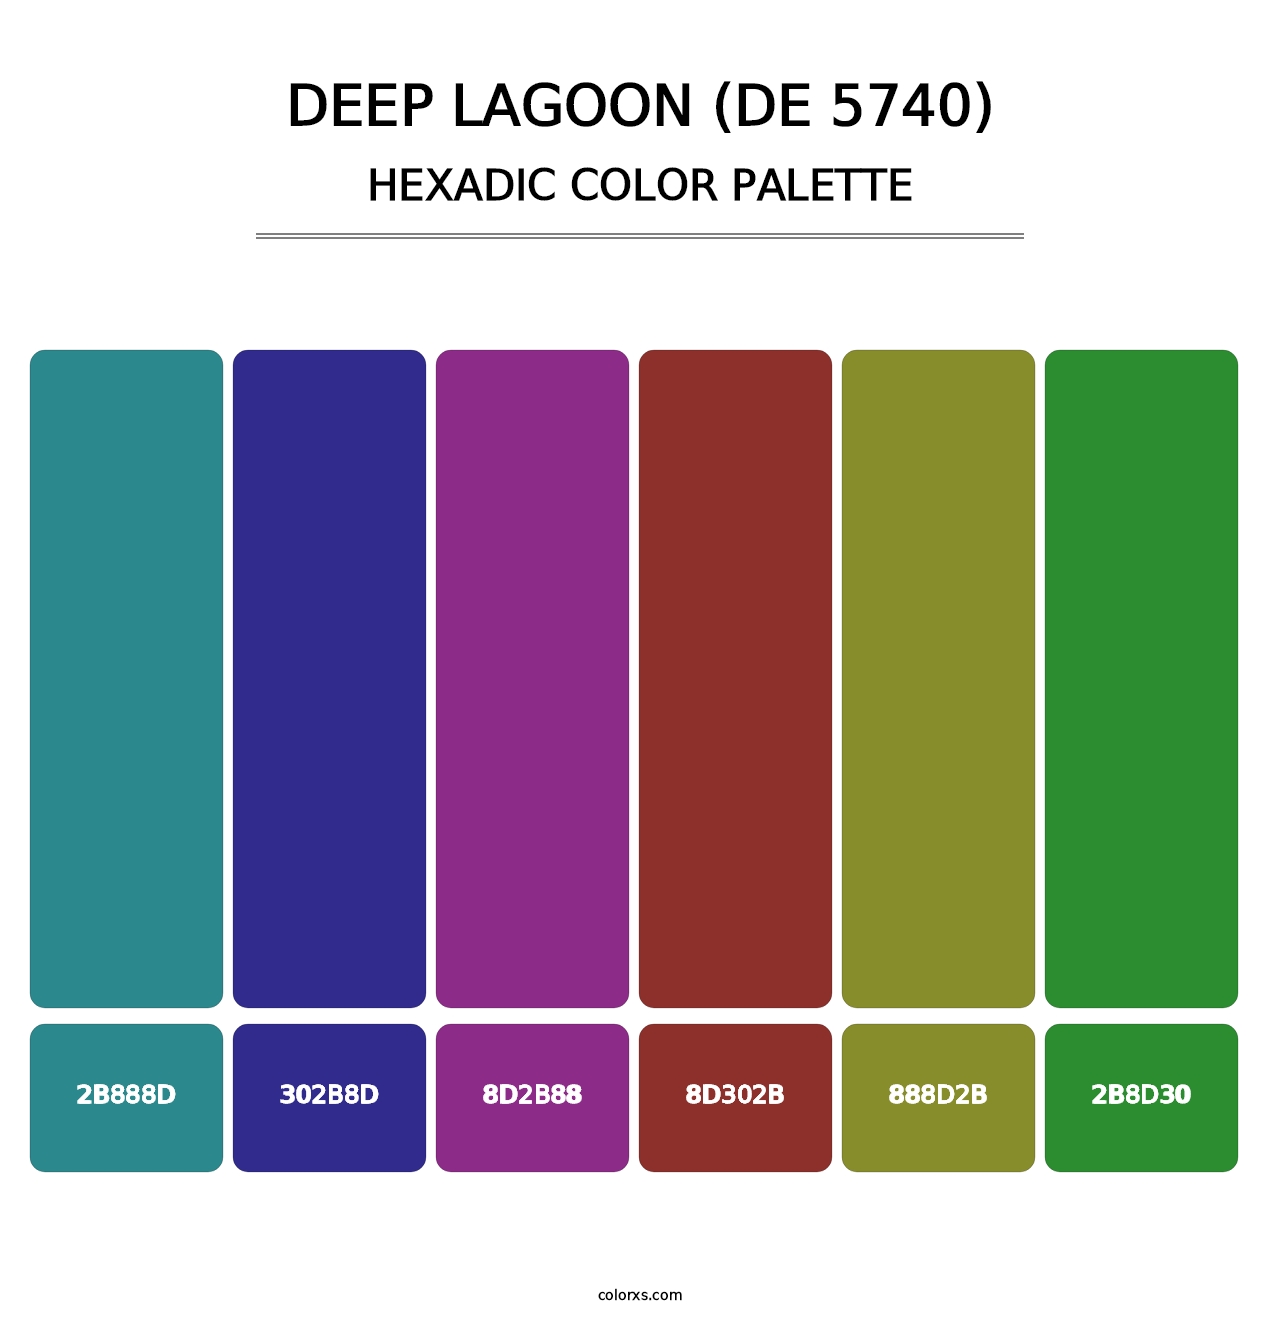 Deep Lagoon (DE 5740) - Hexadic Color Palette